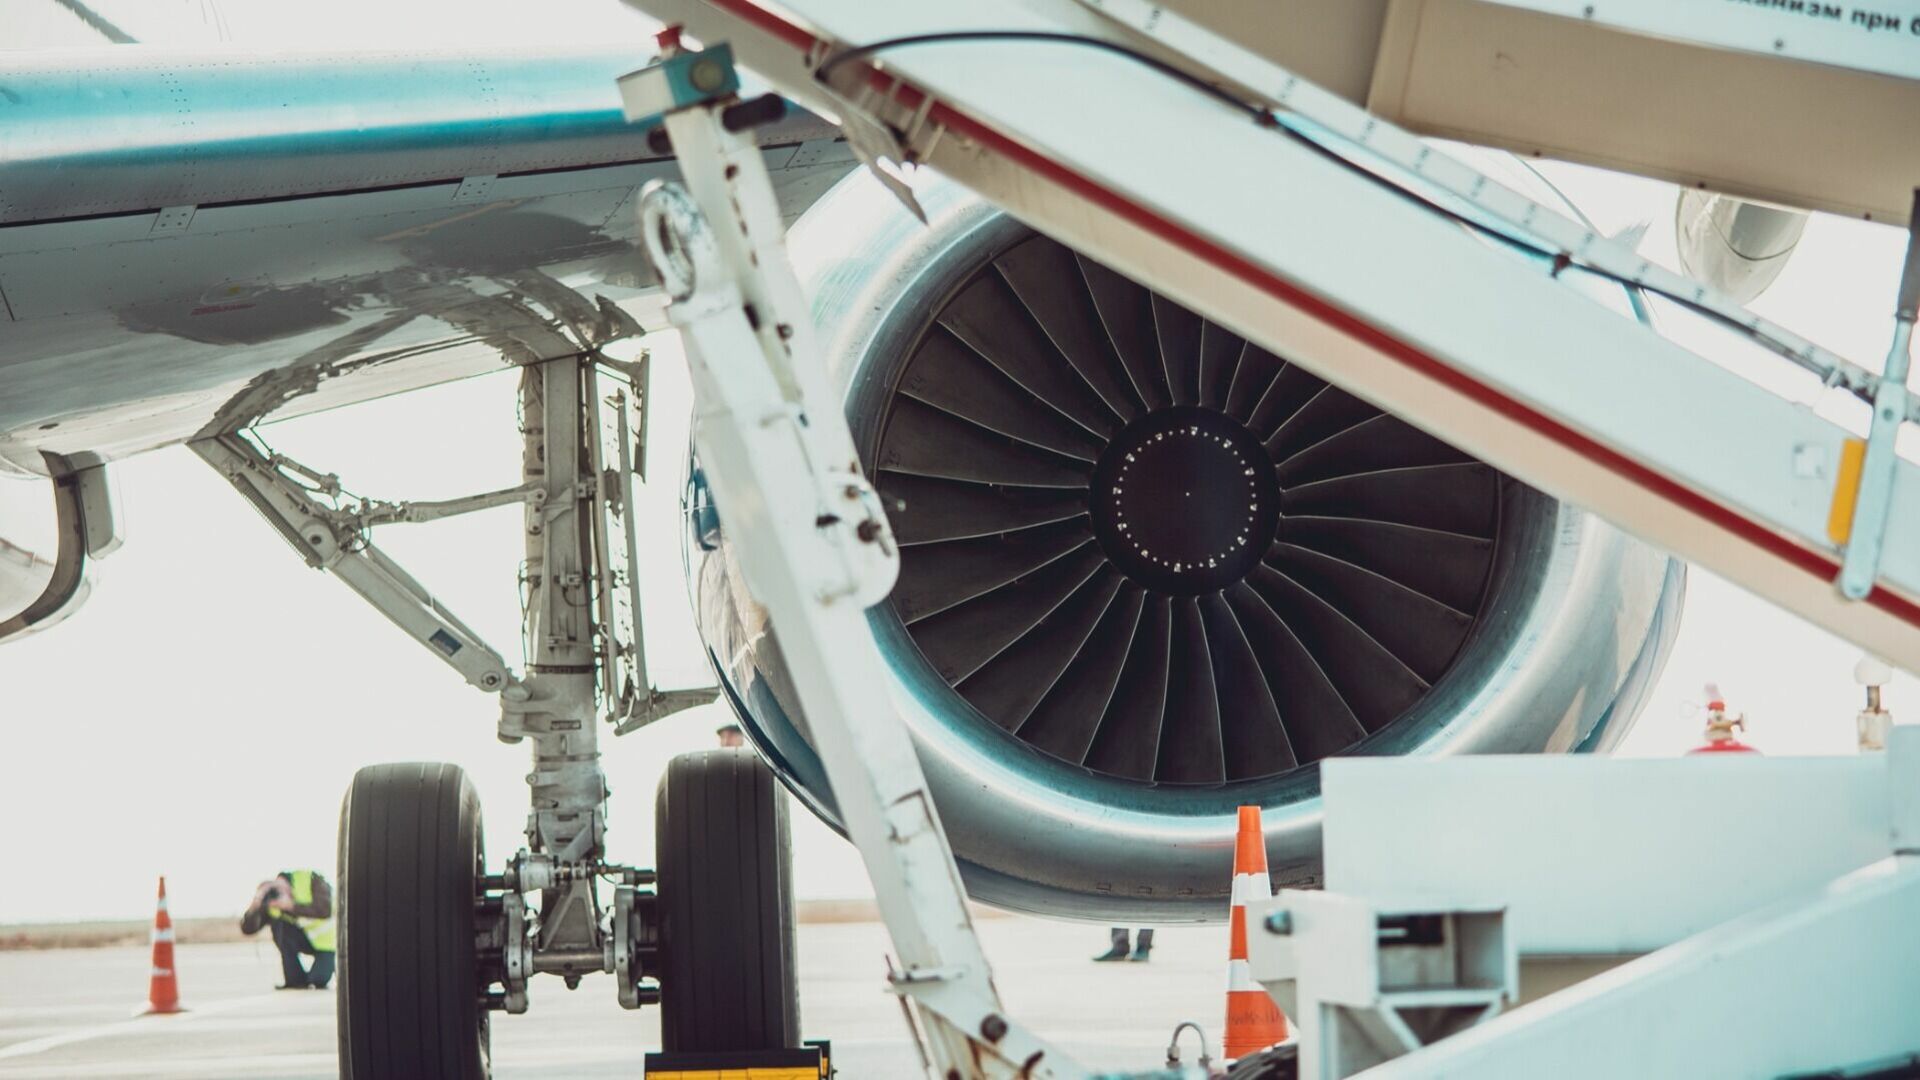 Авиаперевозки в ЯНАО под угрозой — для Superjet 100 не хватает импортных деталей